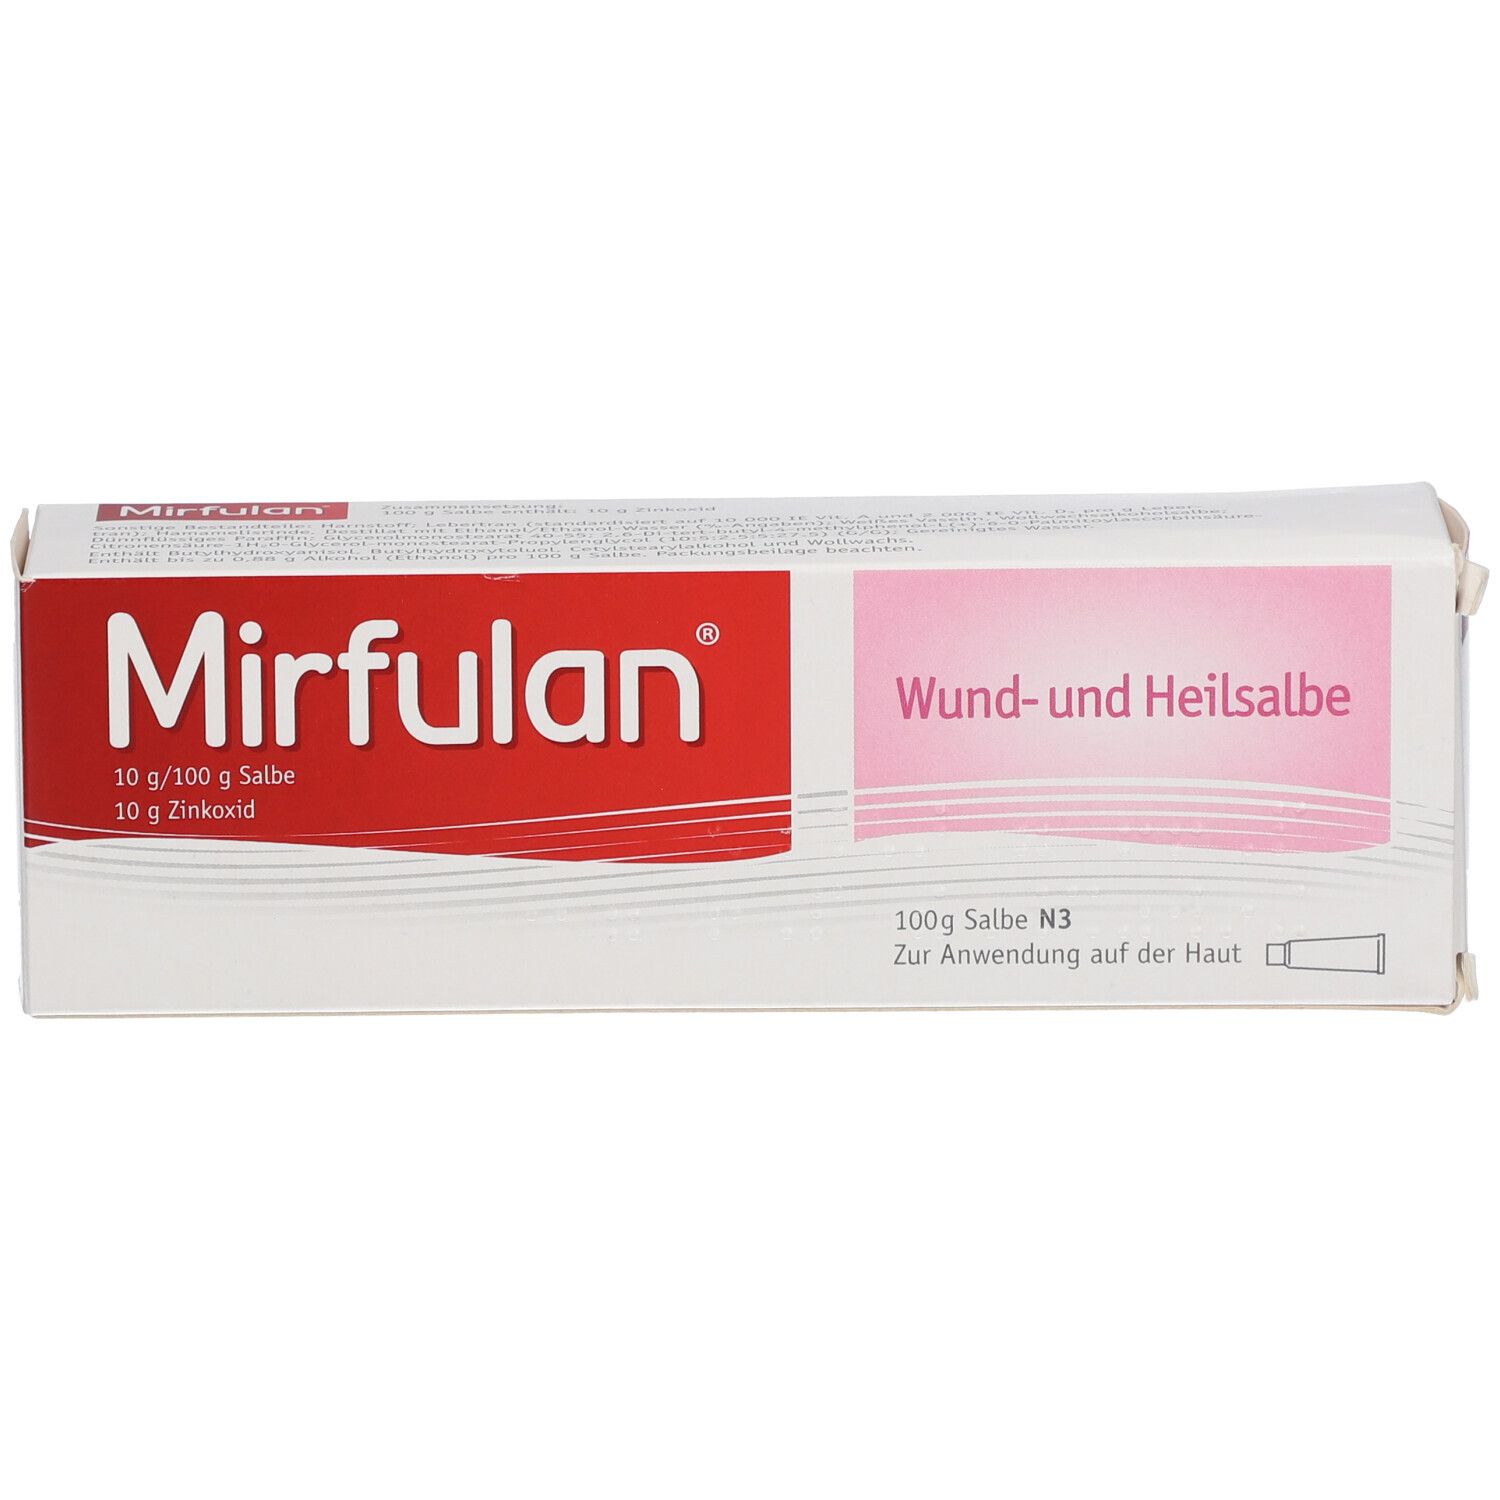 Mirfulan® Wund- und Heilsalbe